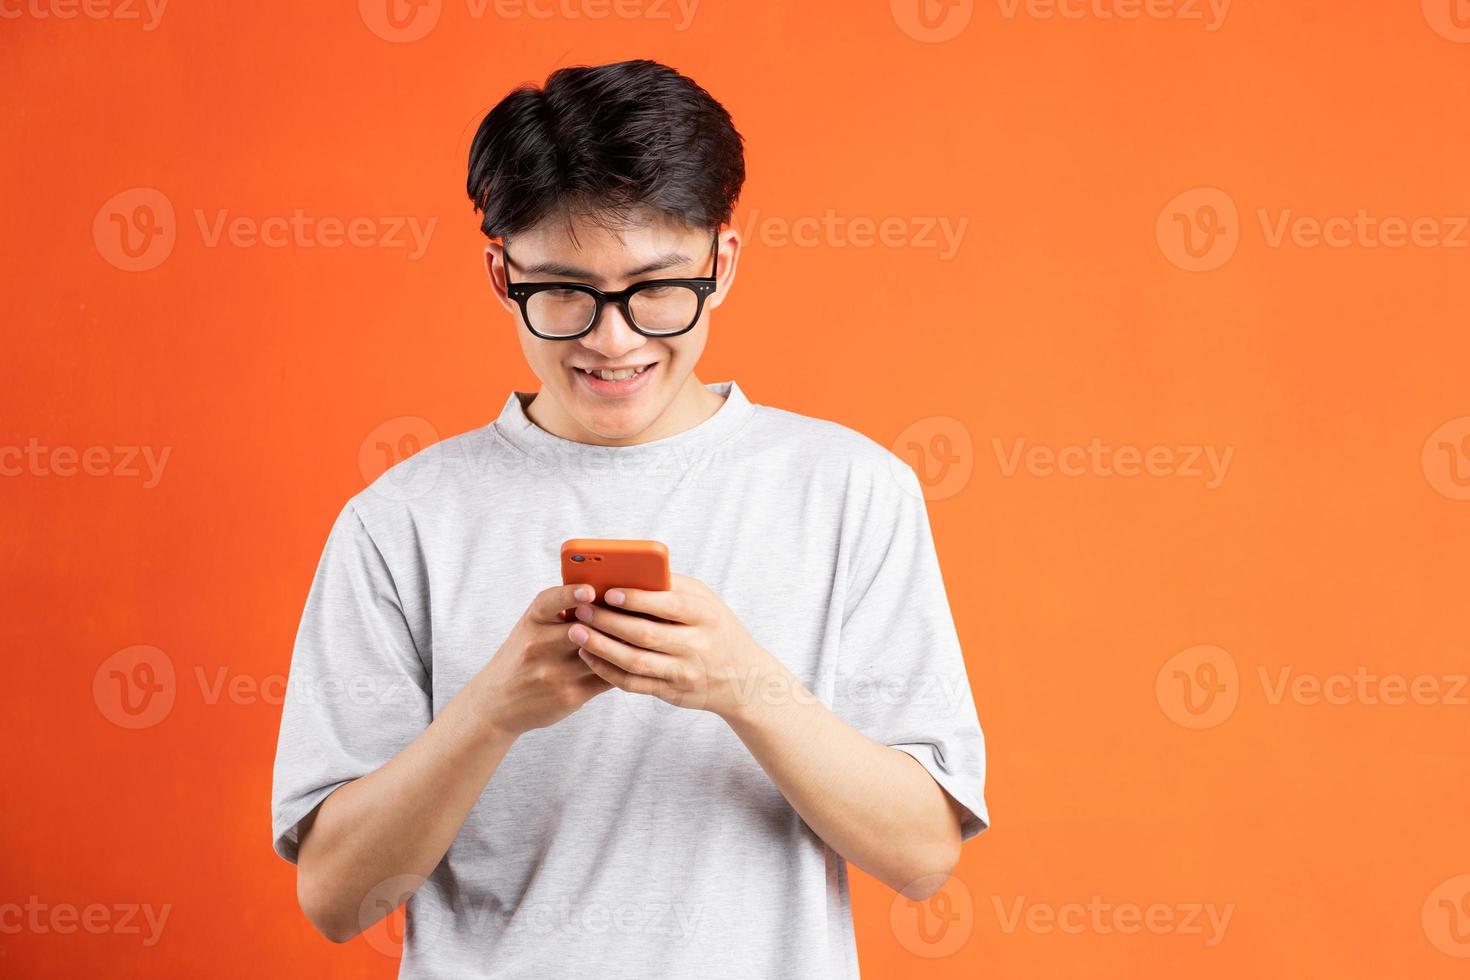 jovem asiático alegre usando telefone isolado em fundo laranja foto